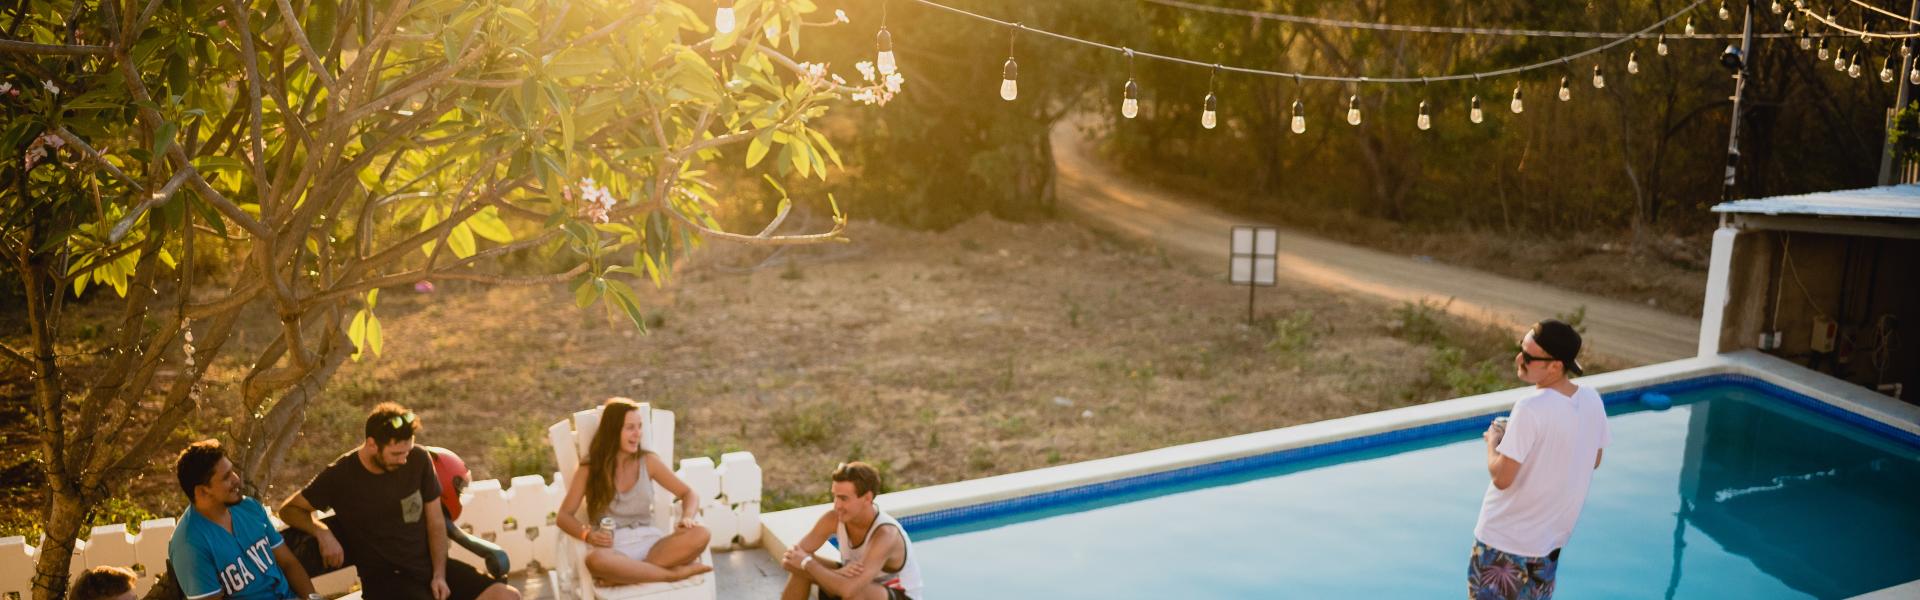 Ferienhaus mit Pool in Costa Calma - Casamundo